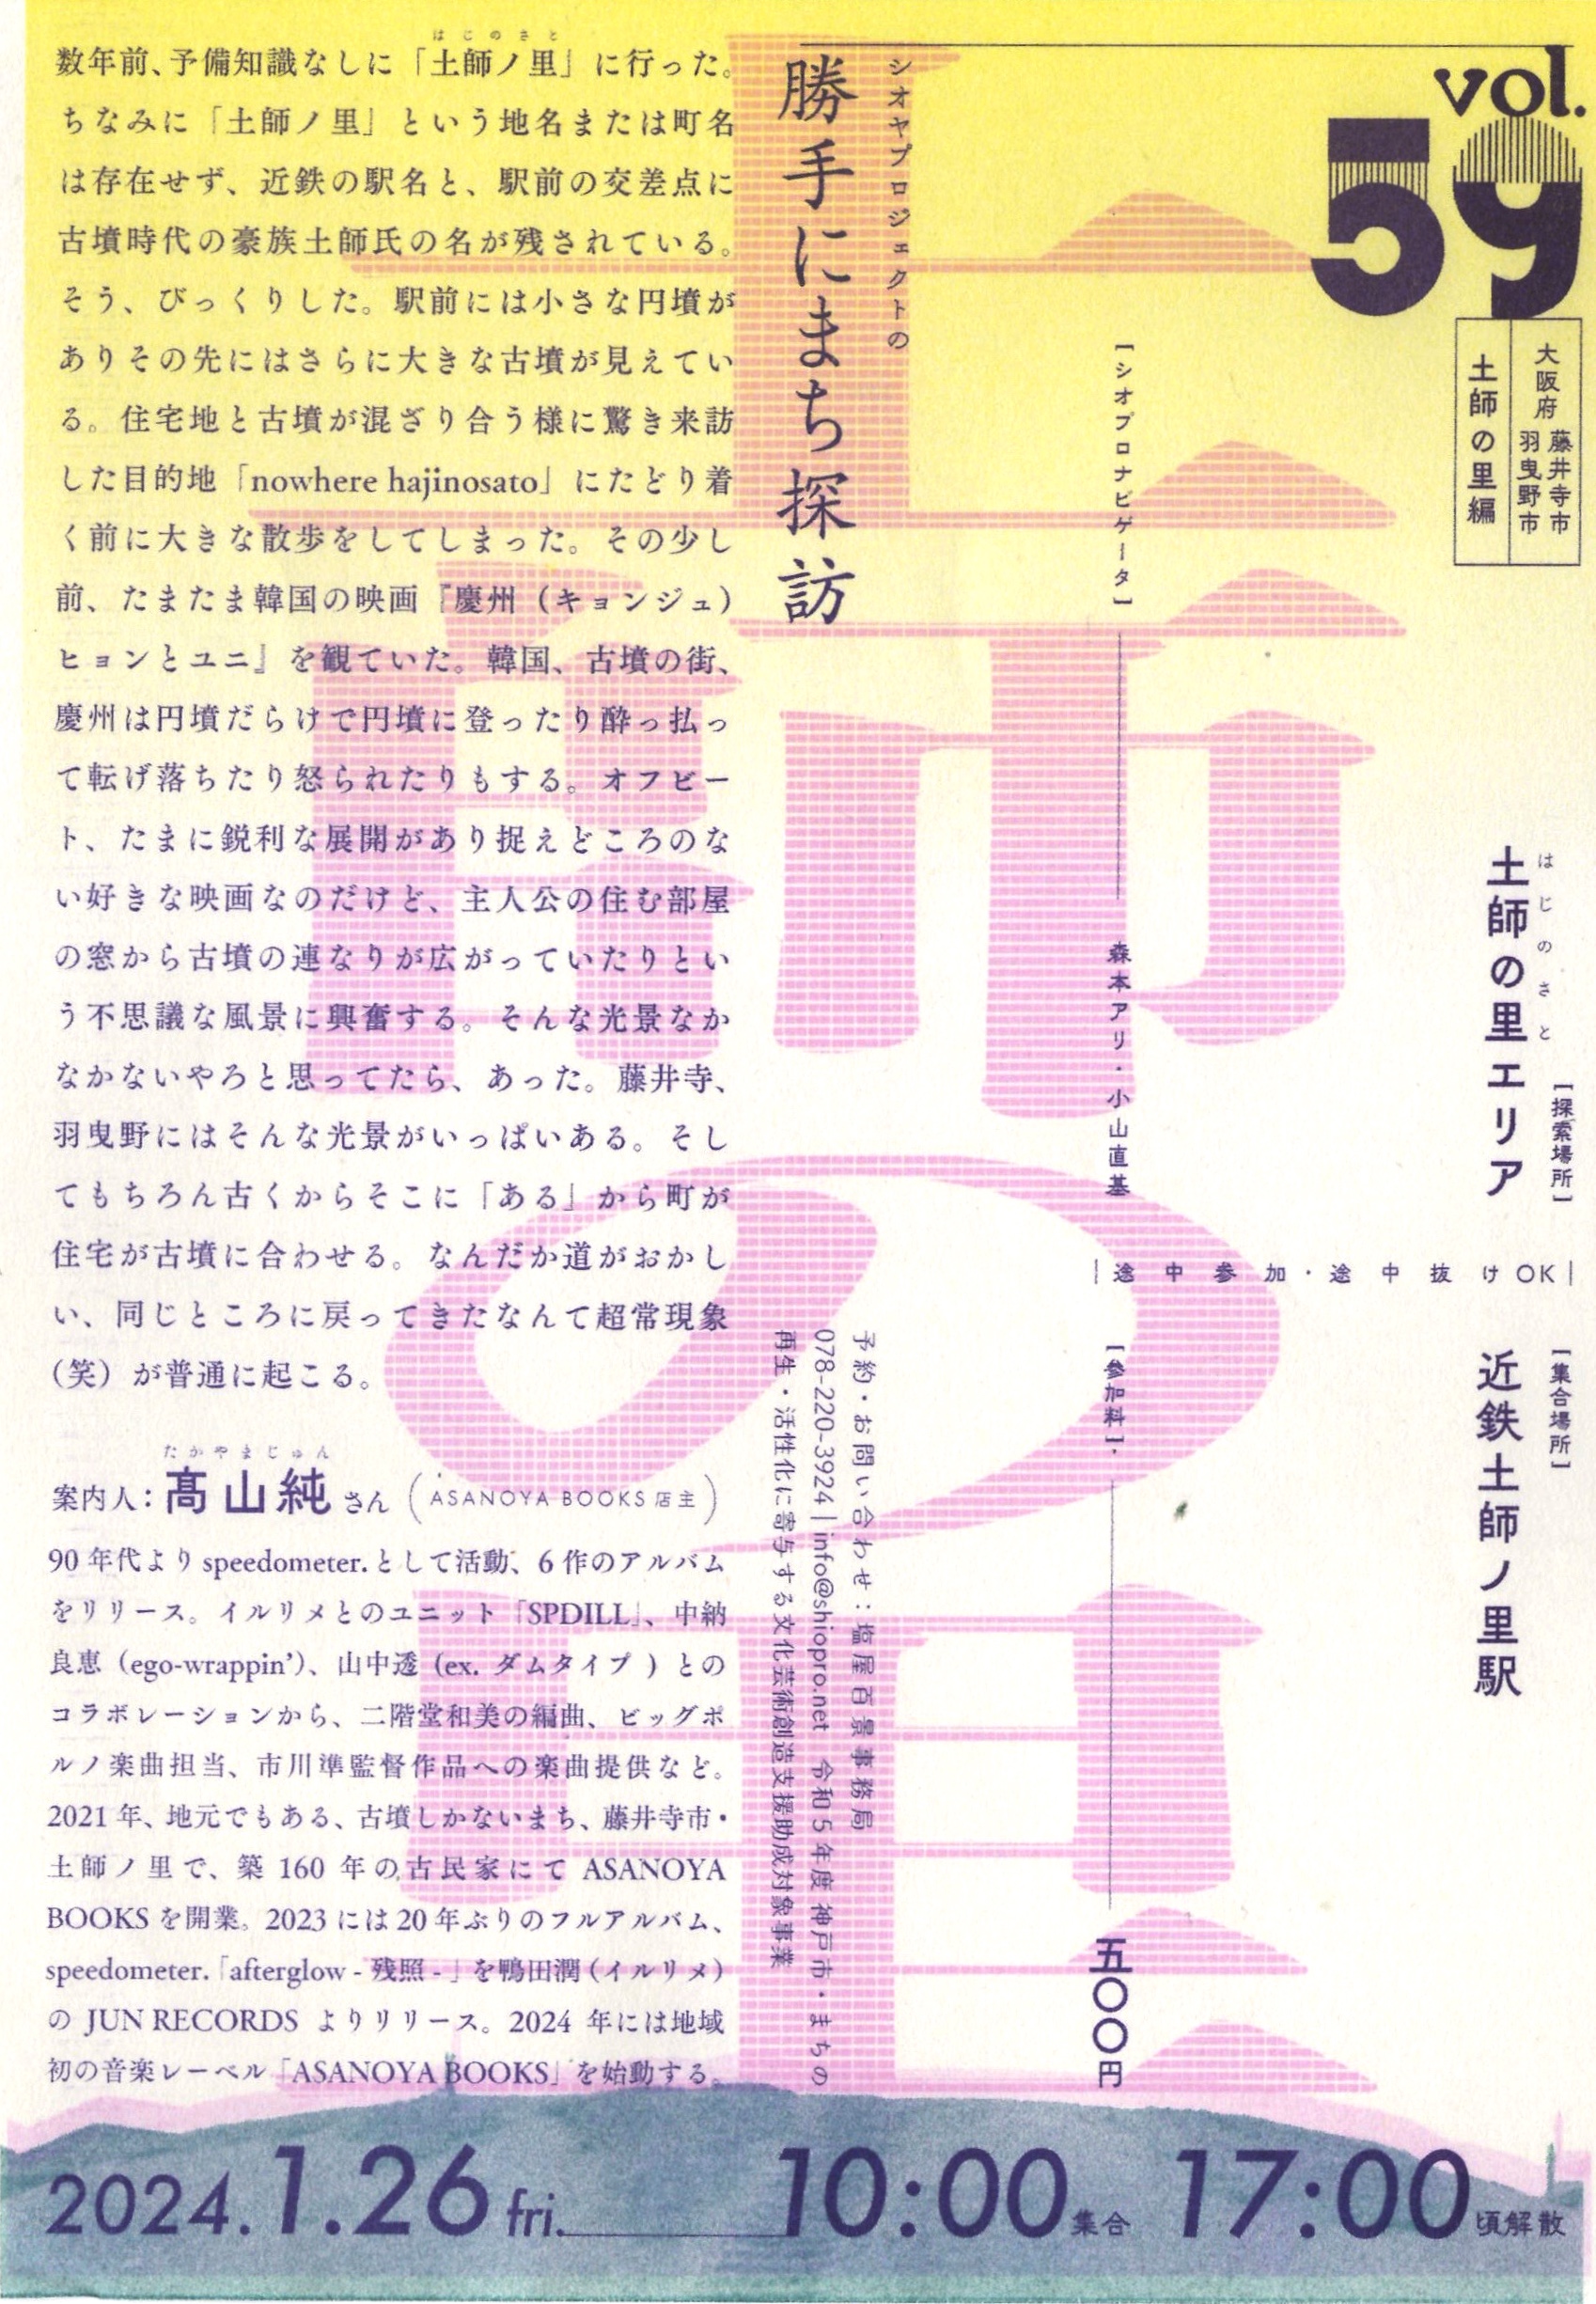 1/26(金) シオヤプロジェクトの勝手にまち探訪 vol.59 土師の里編